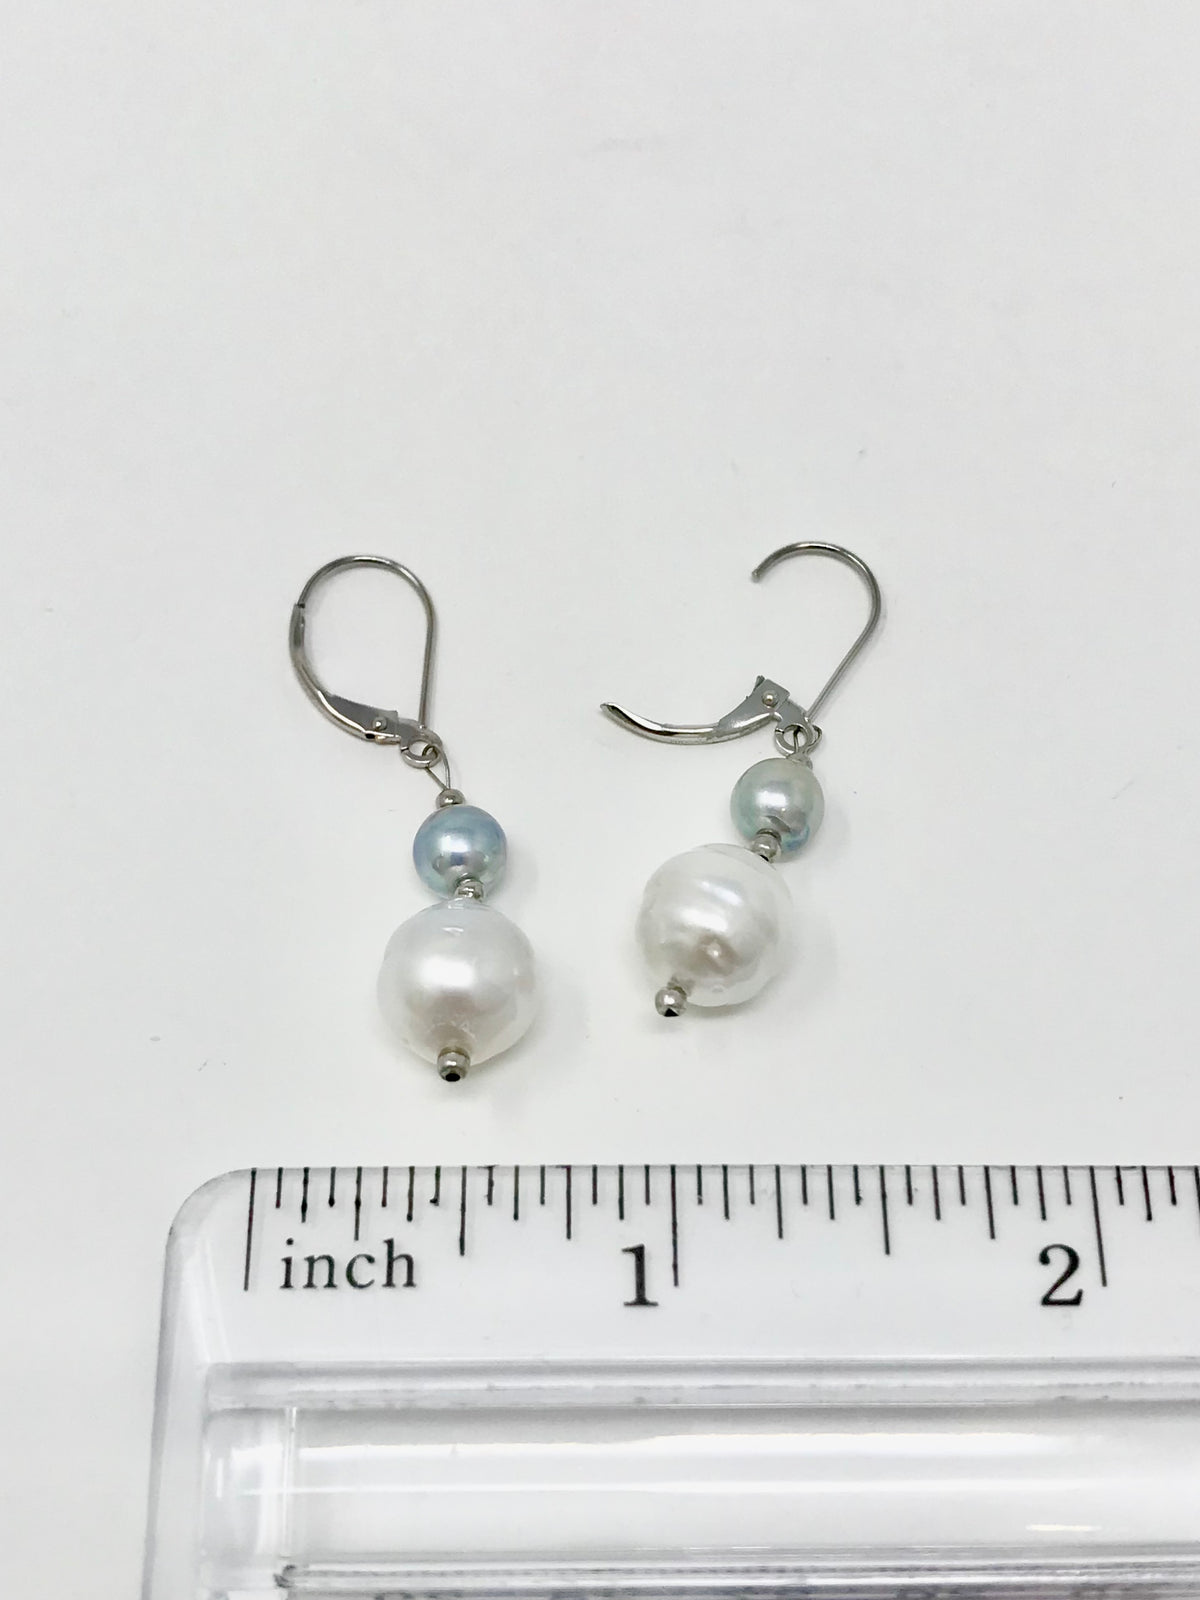 Southsea Pearl Drop Earrings